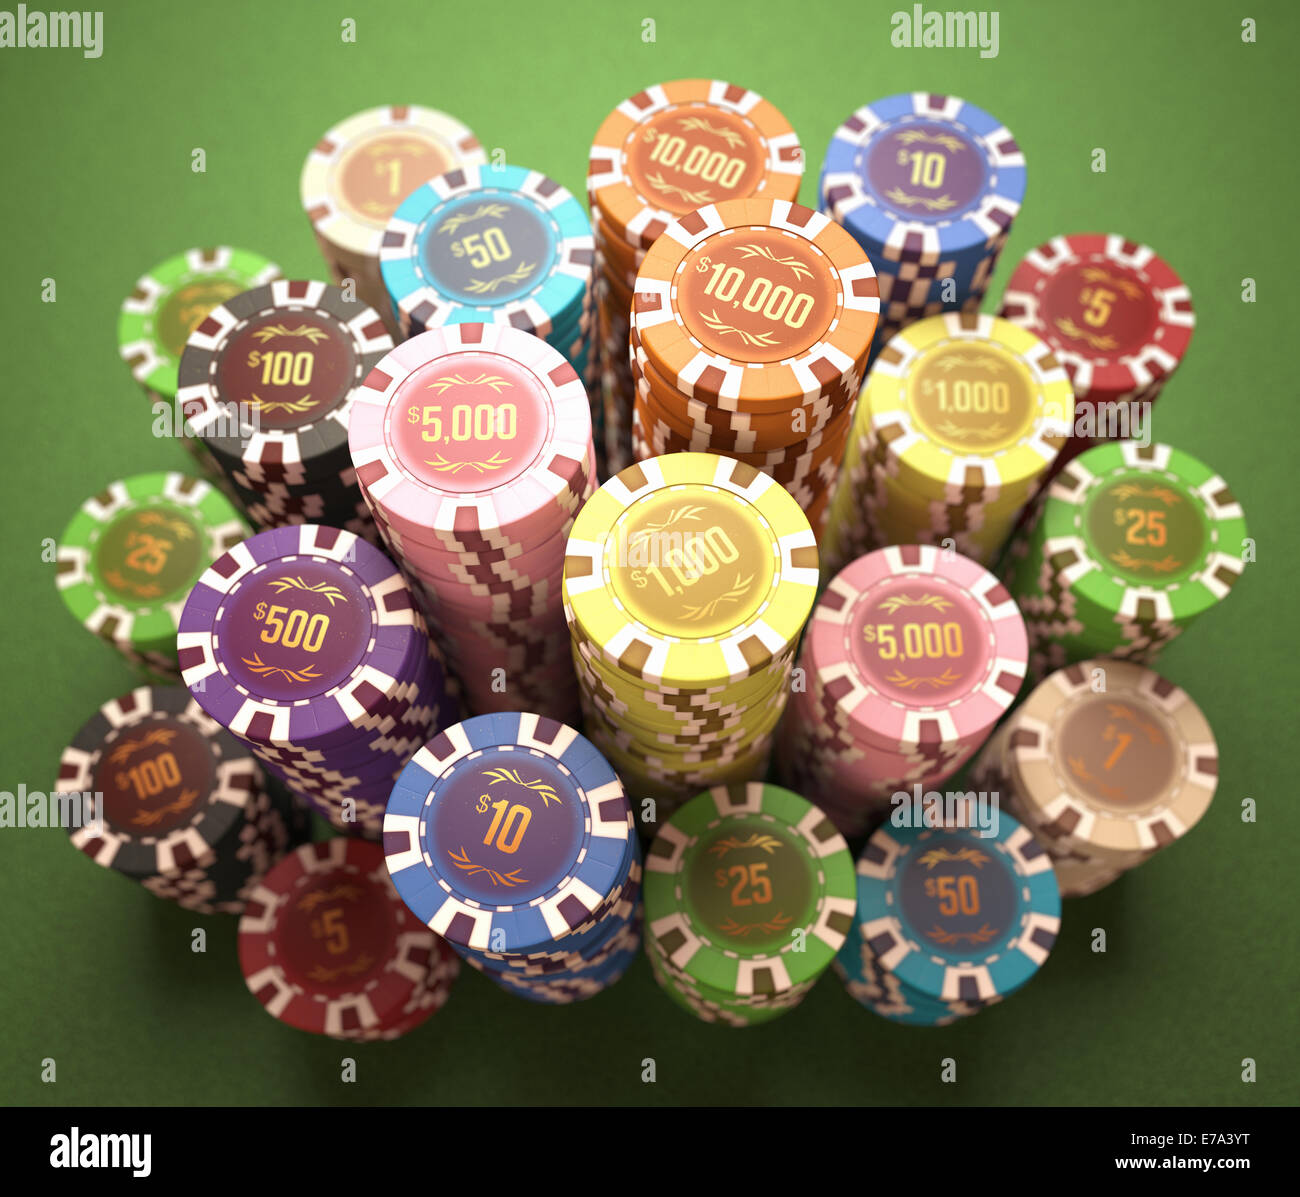 Jetons colorés sur une table verte. Concept de casino et jeux de hasard. Chemin de coupure sur les jetons. Banque D'Images